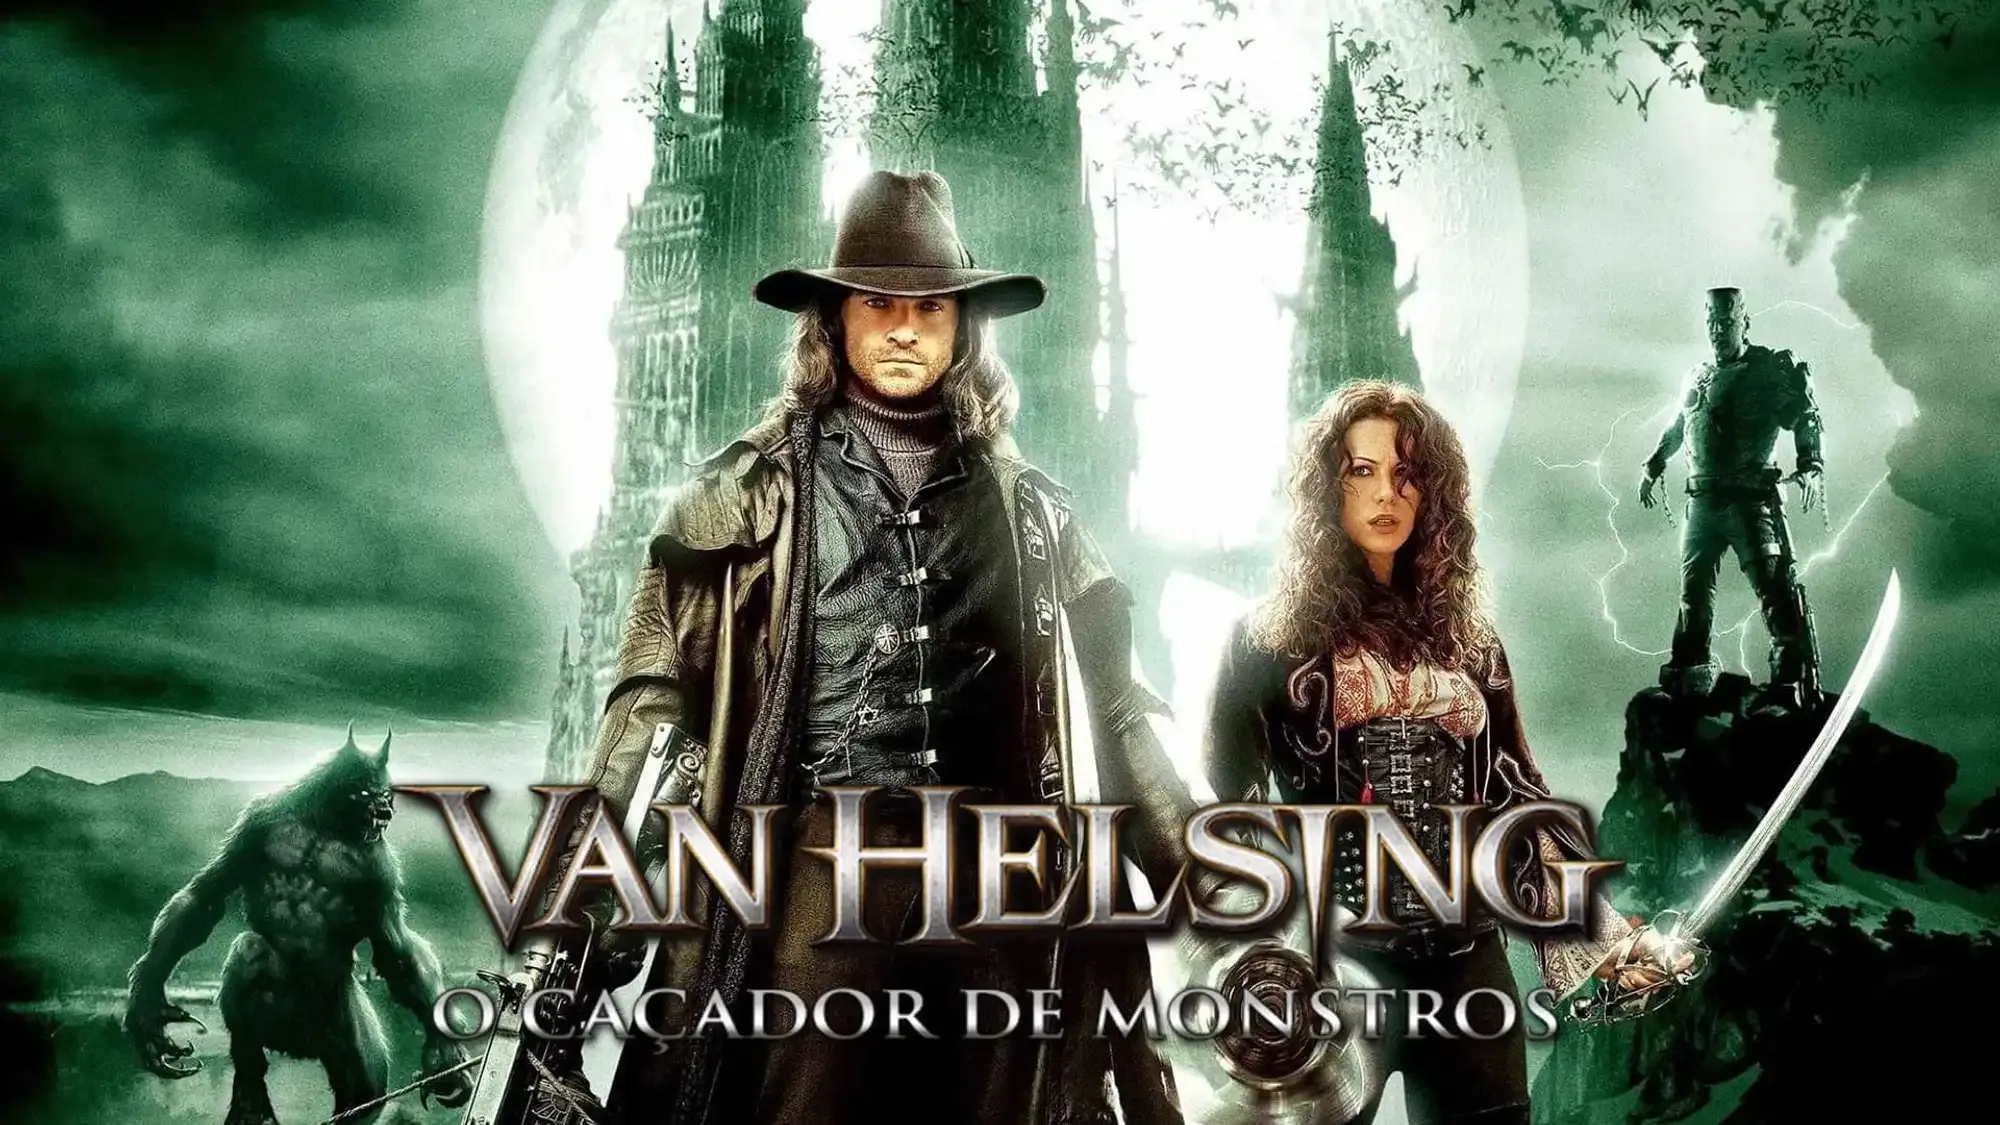 Van Helsing movie review